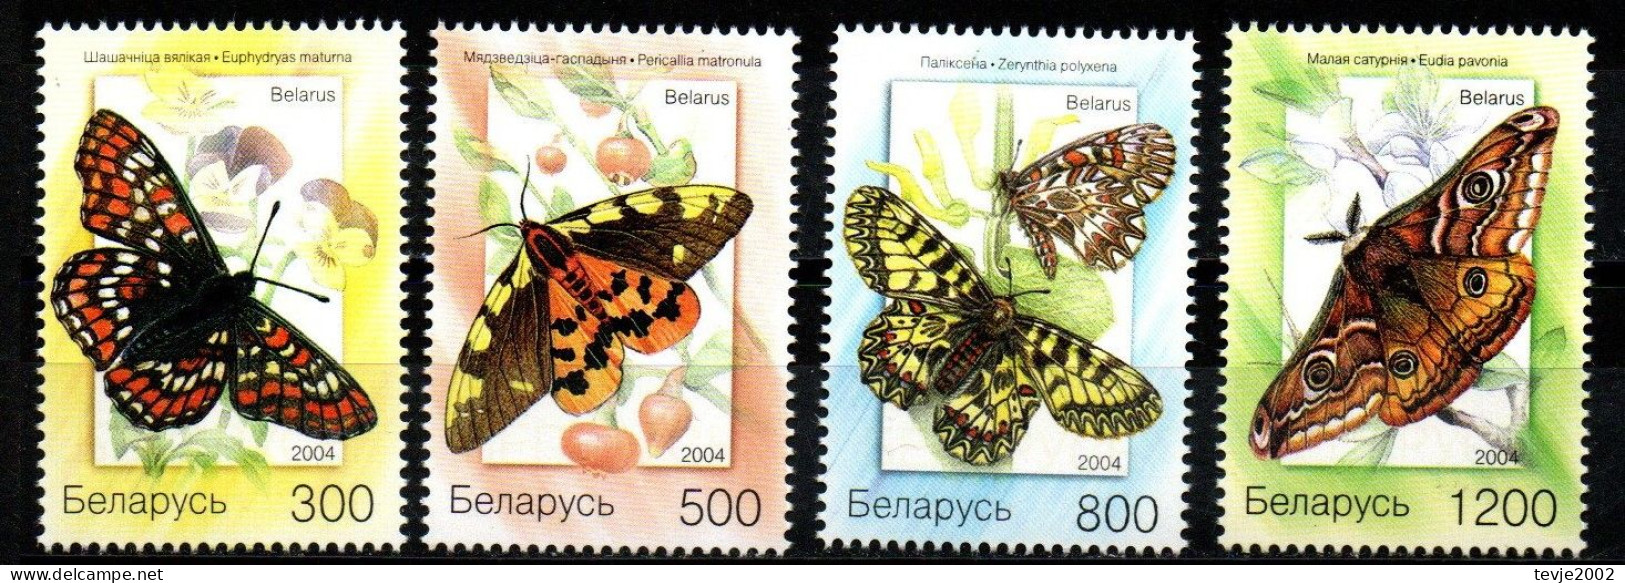 Weißrussland Belarus 2004 - Mi.Nr. 557 - 560 - Postfrisch MNH - Tiere Animals Schmetterlinge Butterflies - Farfalle